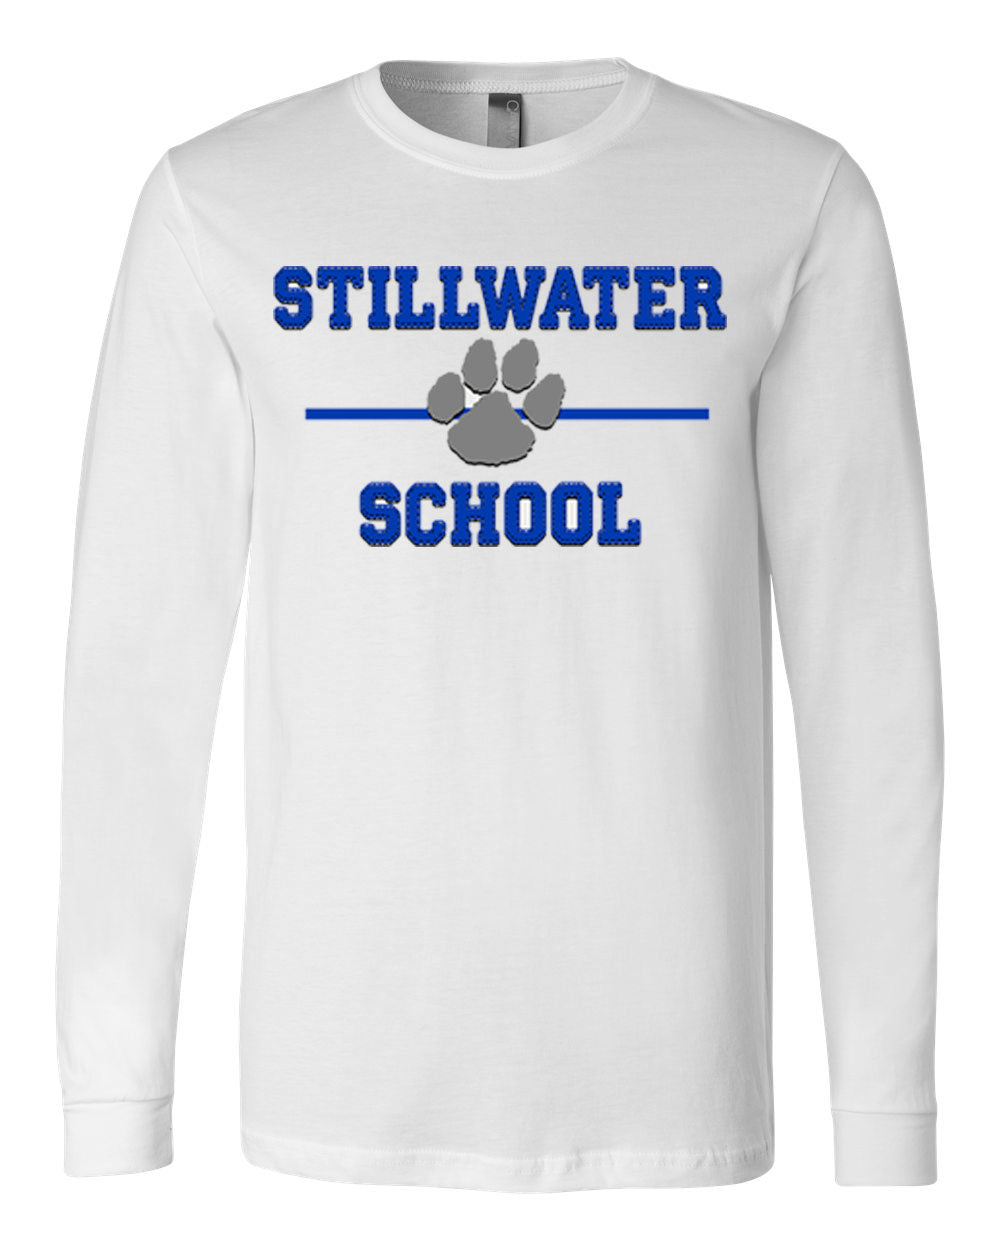 Stillwater Design 11 Long Sleeve Shirt